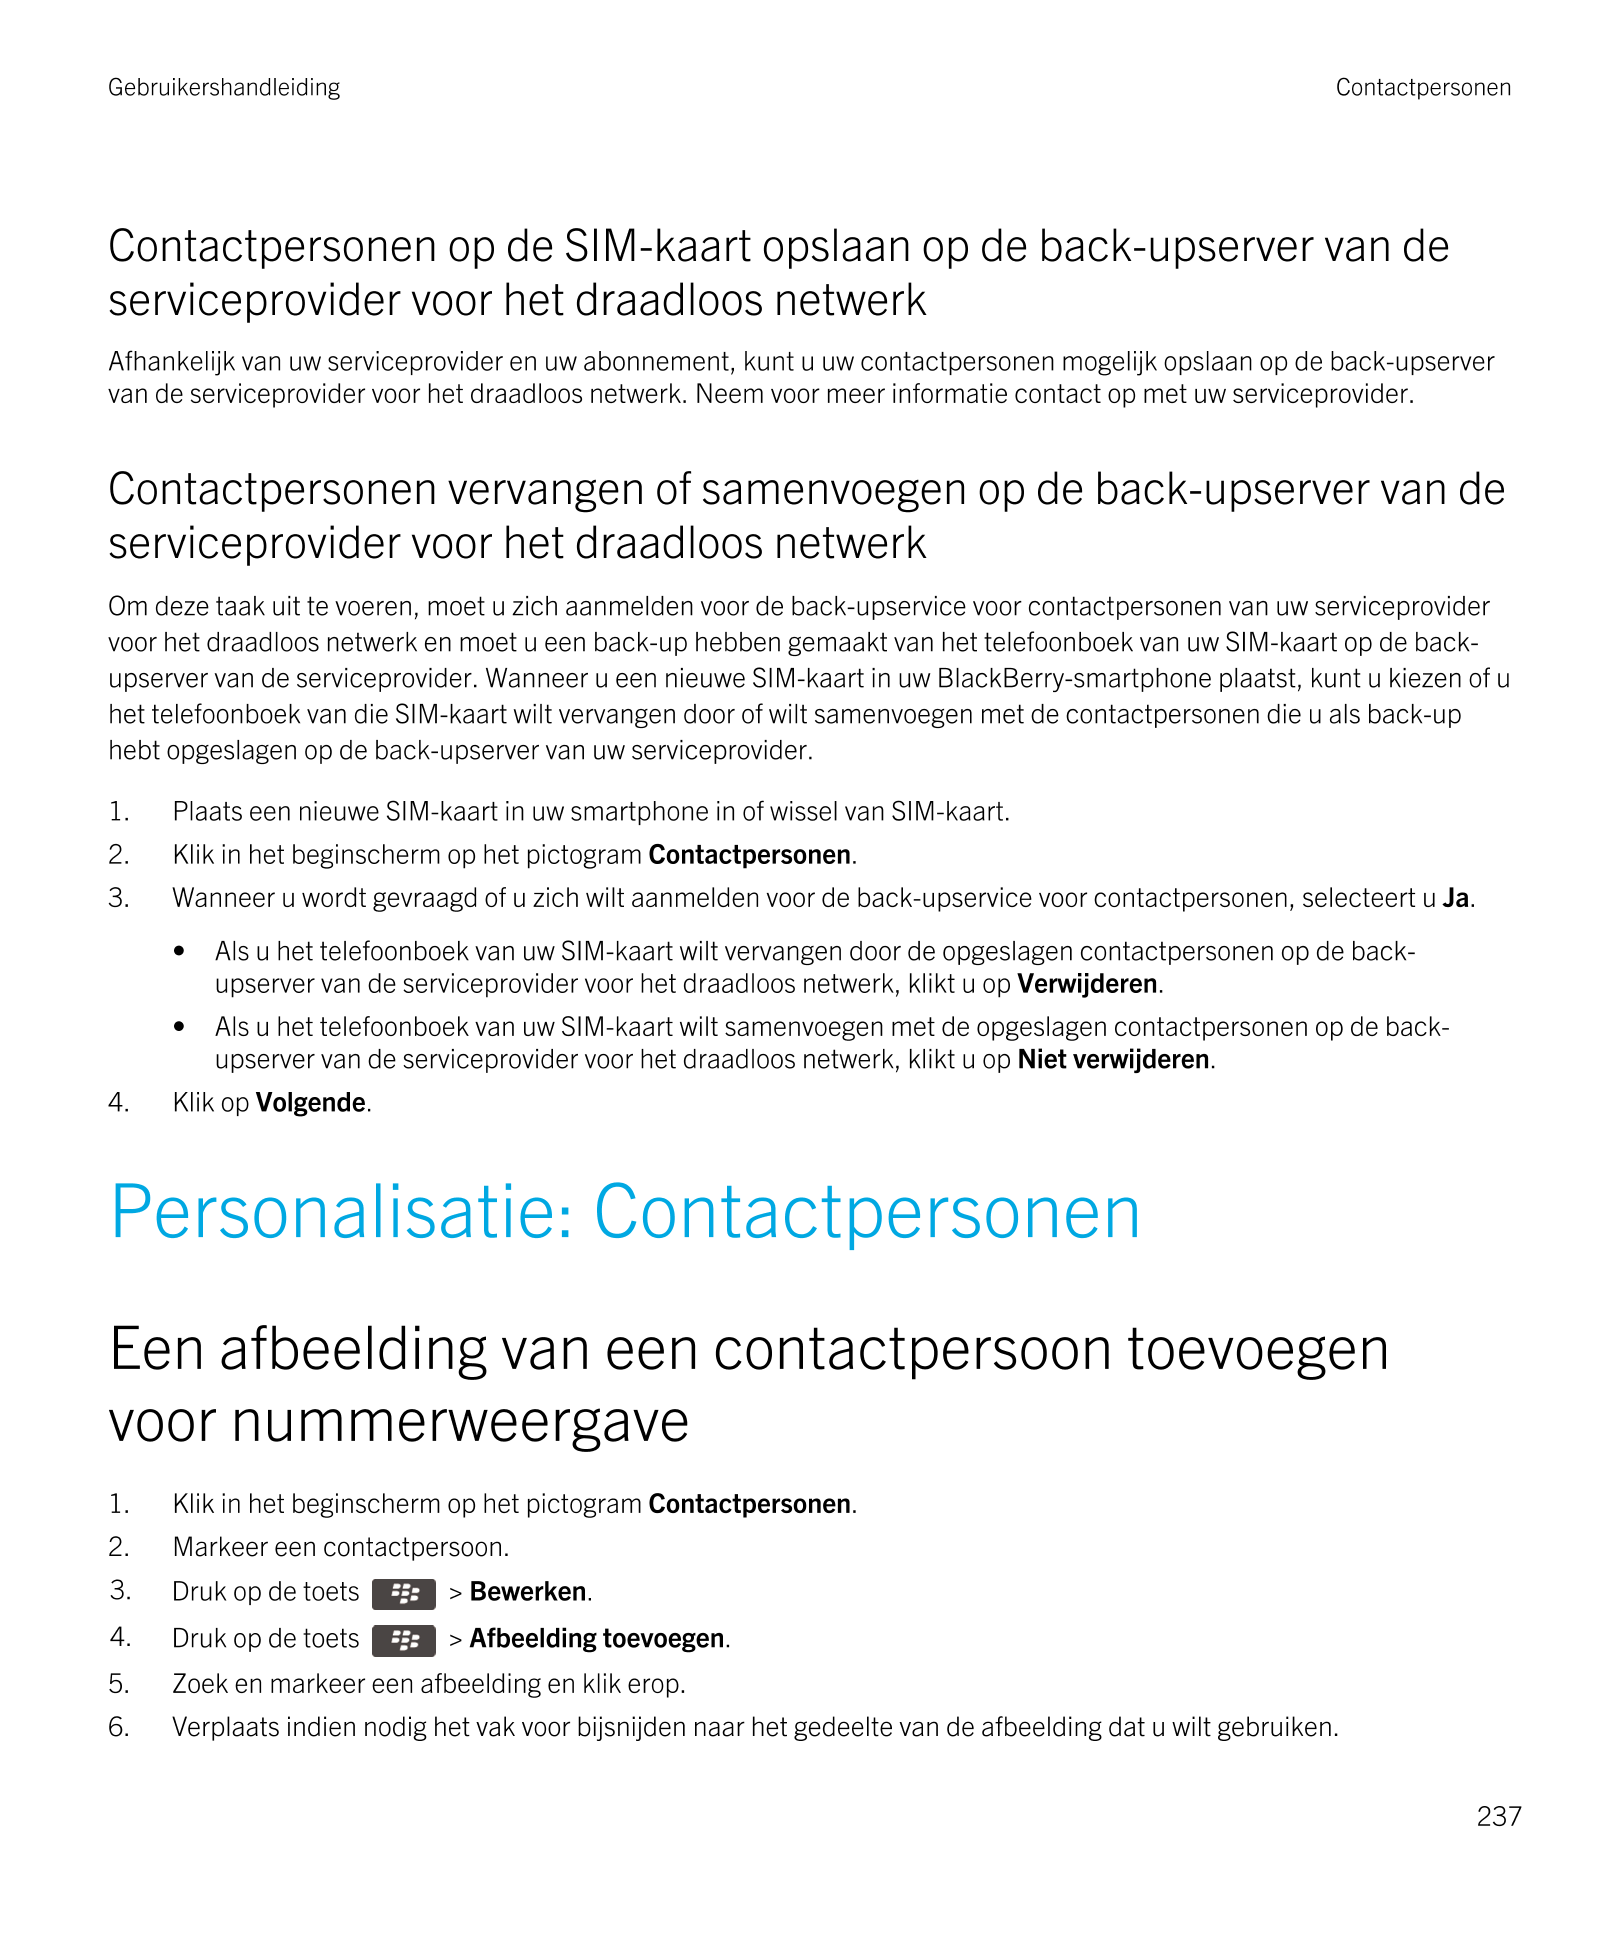 Gebruikershandleiding Contactpersonen
Contactpersonen op de SIM-kaart opslaan op de back-upserver van de 
serviceprovider voor h